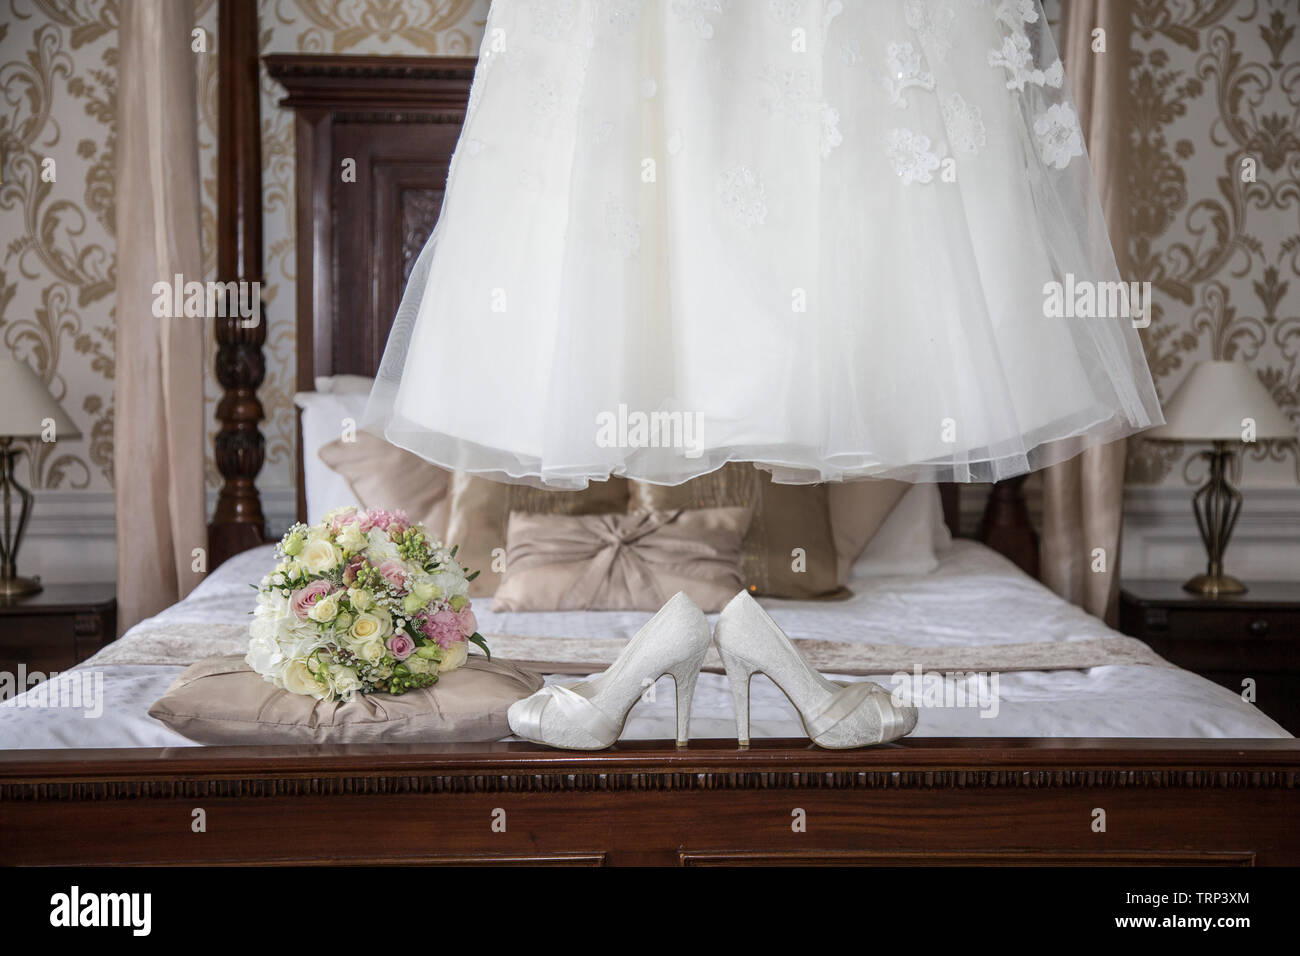 Novias vestido de novia de colgar los y flores en la parte frontal de la foto, esperando a usados por la novia en el día de su boda Fotografía